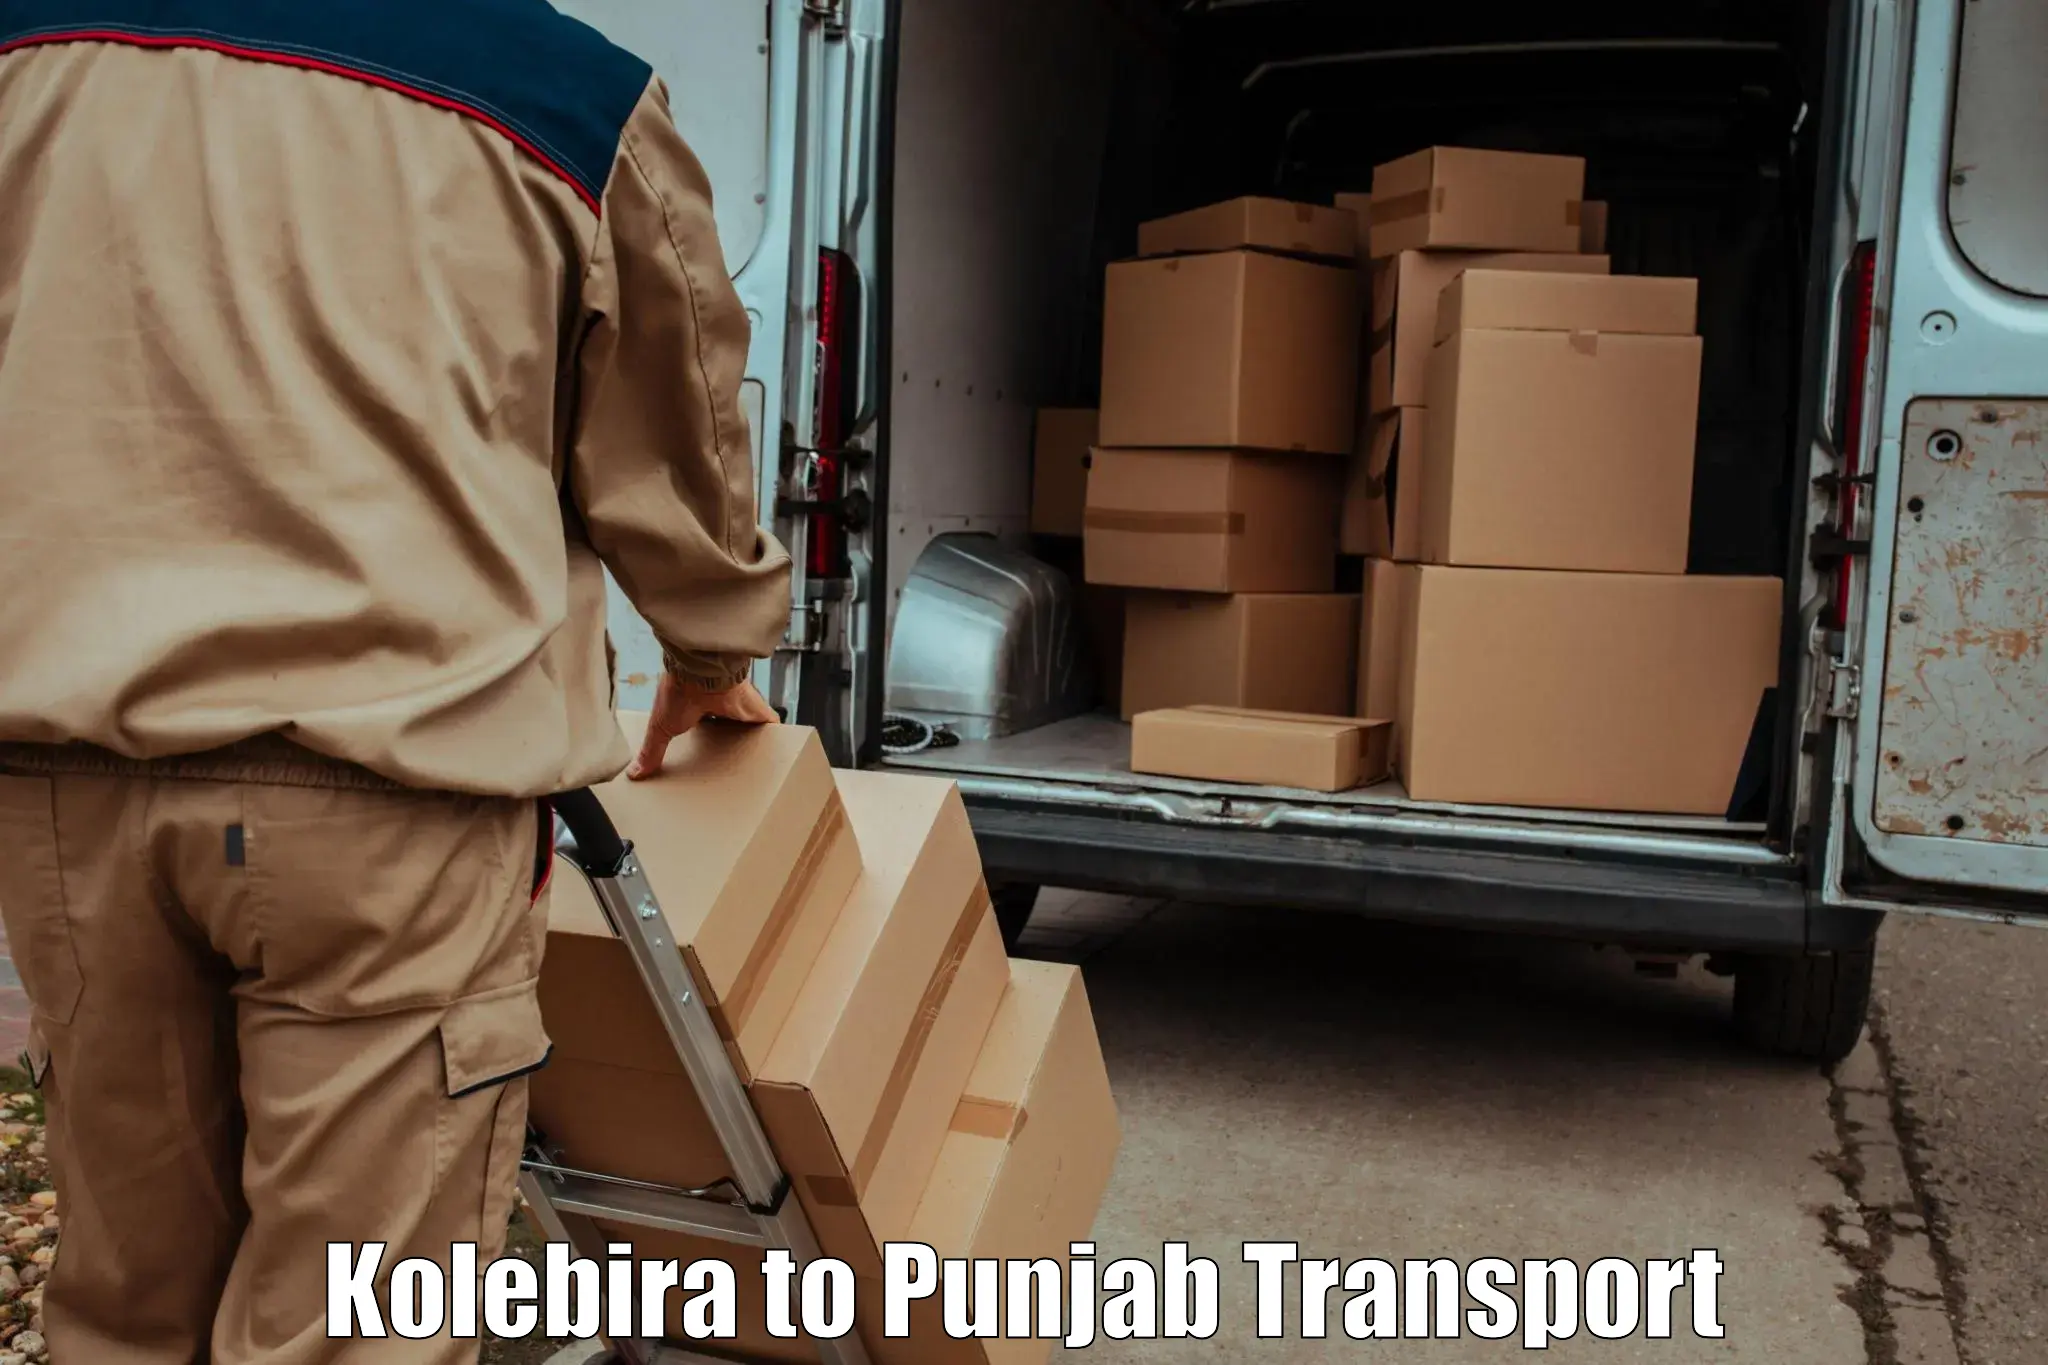 Bike shipping service Kolebira to Punjab